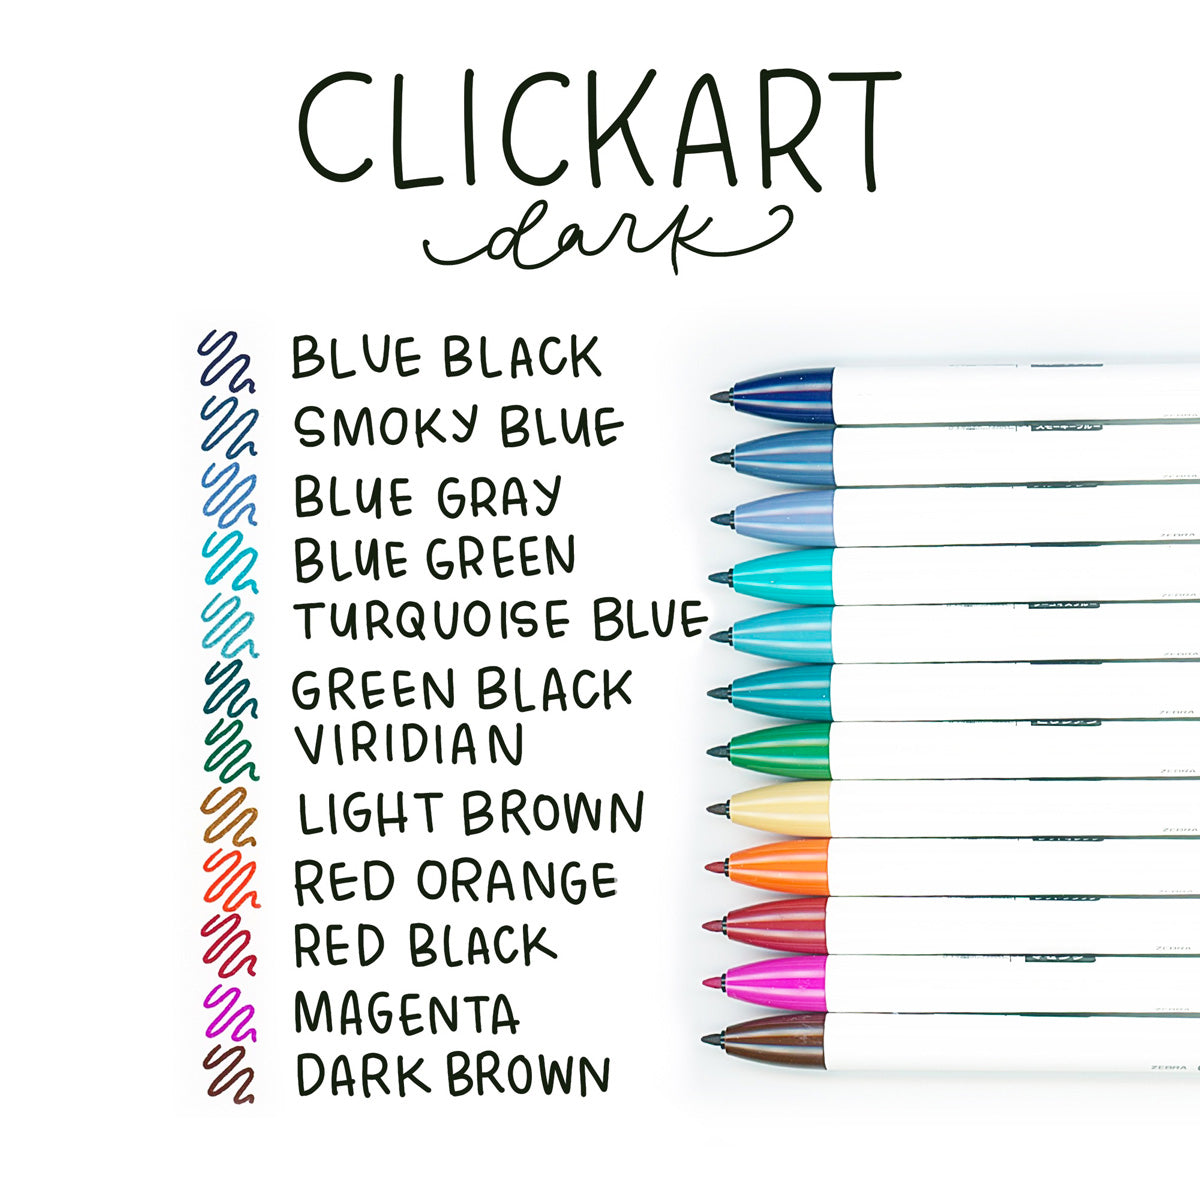 Zebra Pen Creative Notetaking Set, Includes 6 Highlighters, 5 ClickArt  Retractable Marker Pens, and 1 Sarasa Retractable Gel Pen, Assorted Ink  Colors